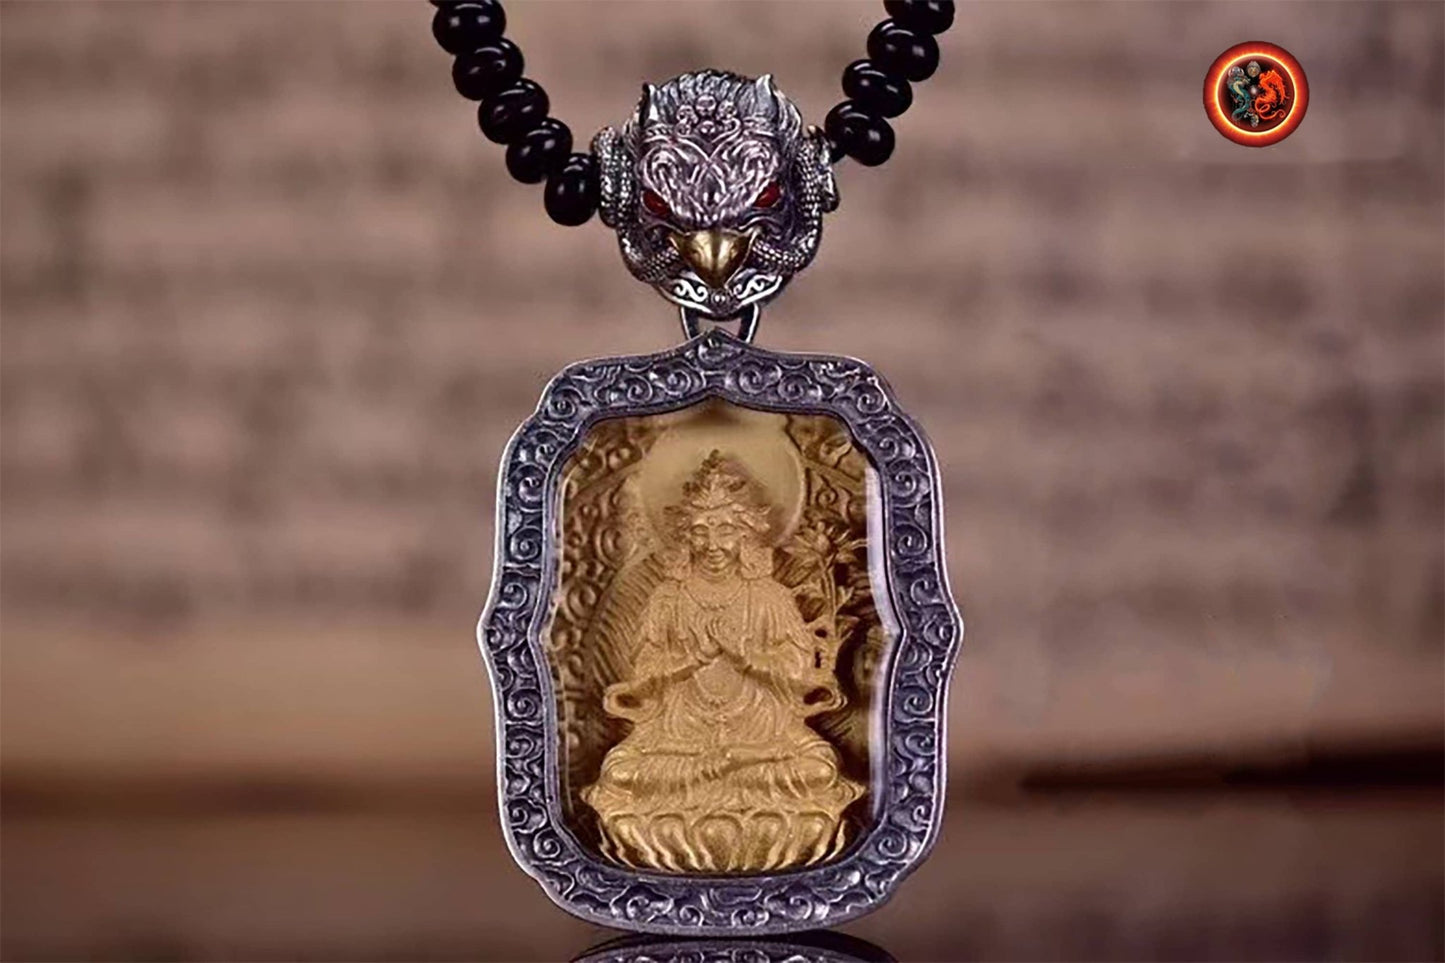 pendentif amulette de protection bouddhiste Bouddha Samantabhadra mala de prière et méditation 108 perles, argent 925 or 18K bélière Garuda - obsidian dragon